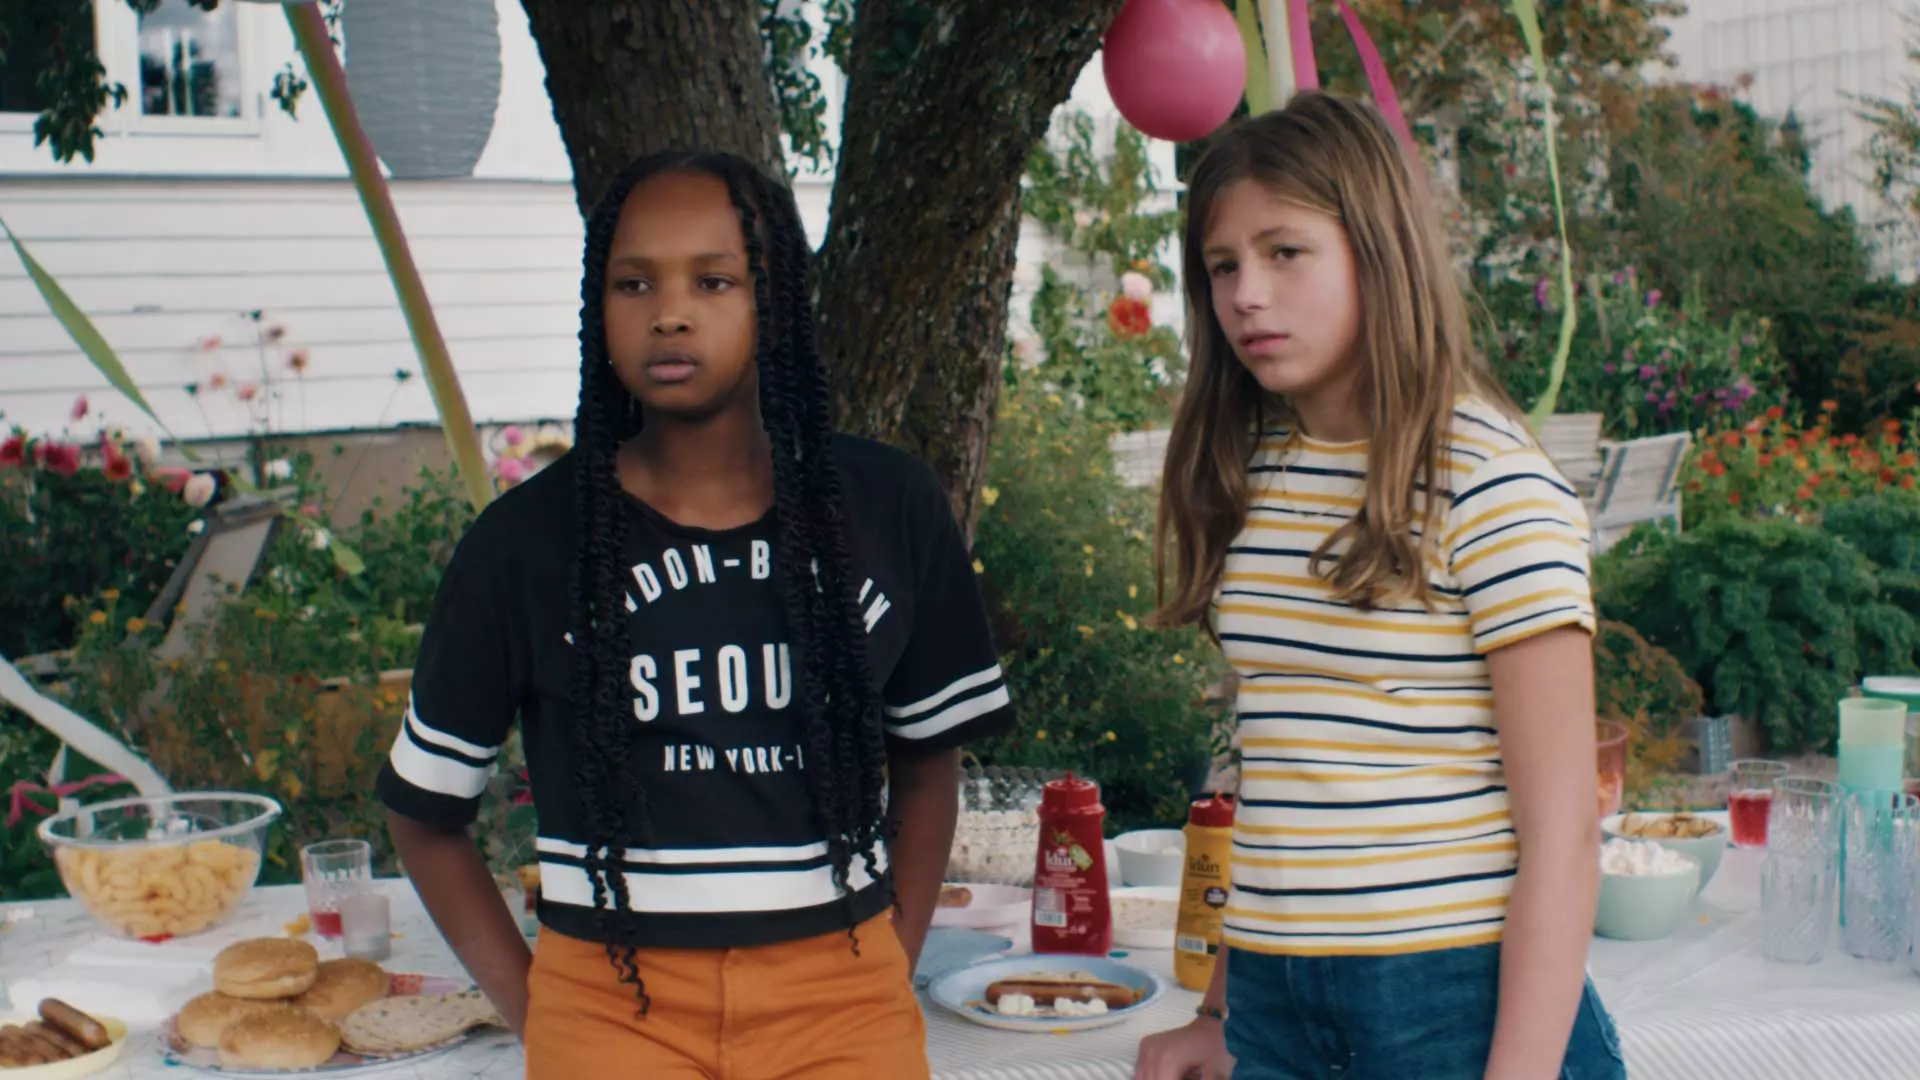 To unge jenter på hagefest. De er omkring 11 år. De står forran et bord med hamburgerbrød, ketchup og annet tilbehør. Det henger ballonger i treet og hagen blomstrer. Jentene har t-skjorte på seg. Det virker som at det er sommer. De ser alvorlige ut.